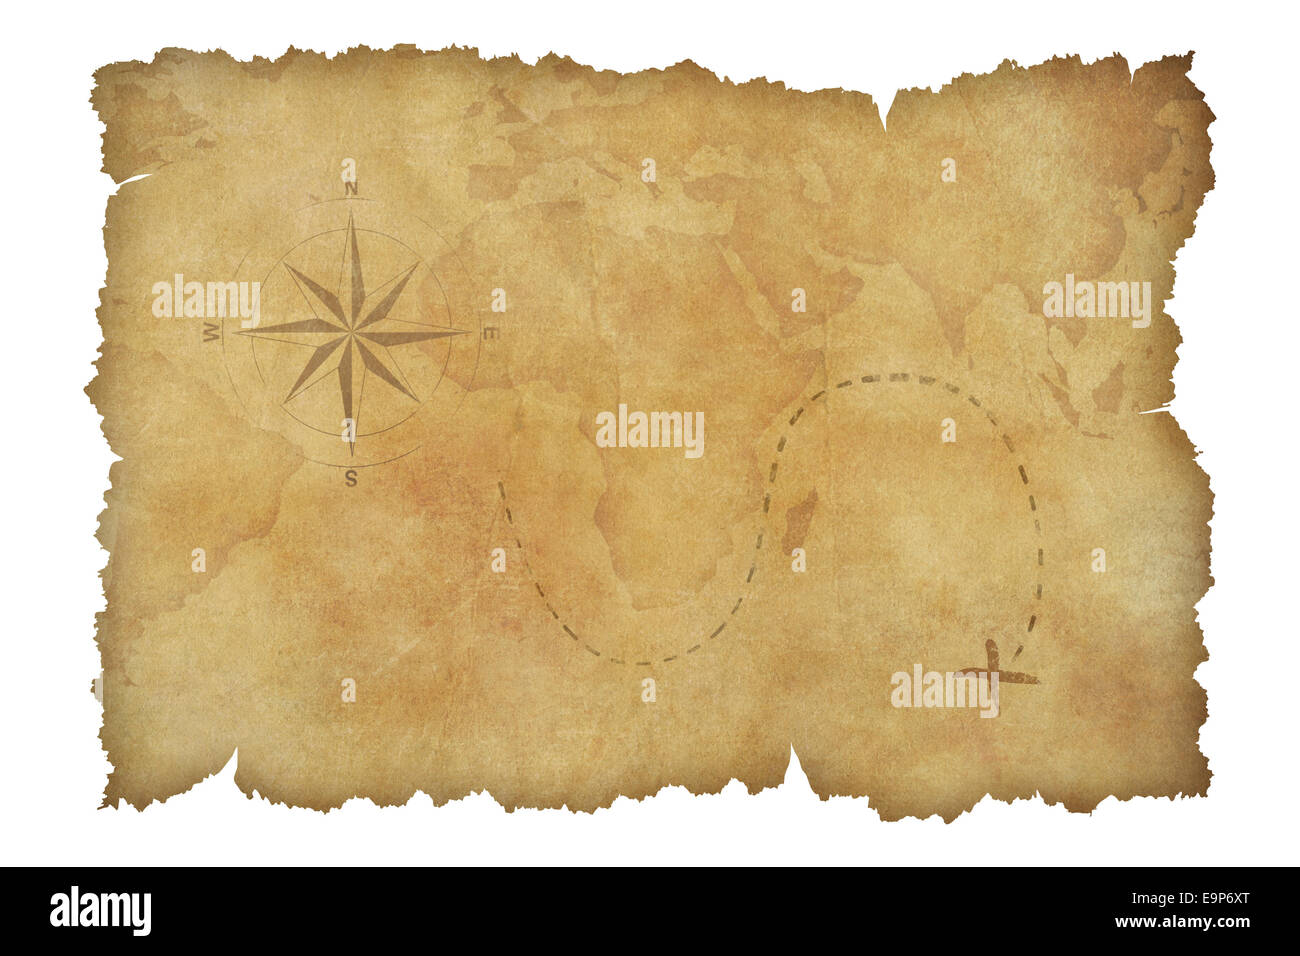 Piraten Pergament Schatzkarte isoliert mit Beschneidungspfad enthalten Stockfoto